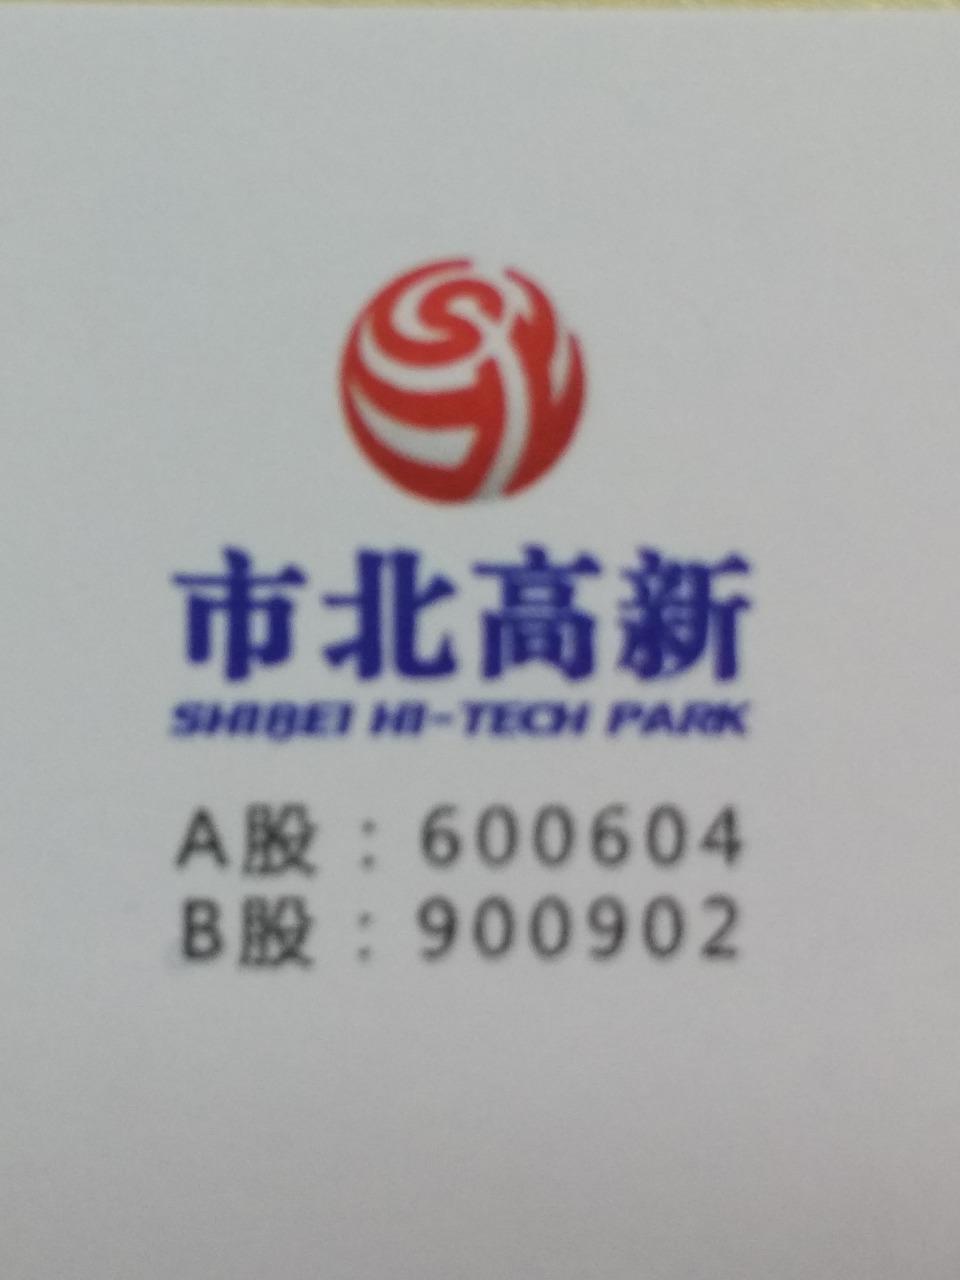 上海二纺机股份有限公司计算机分公司